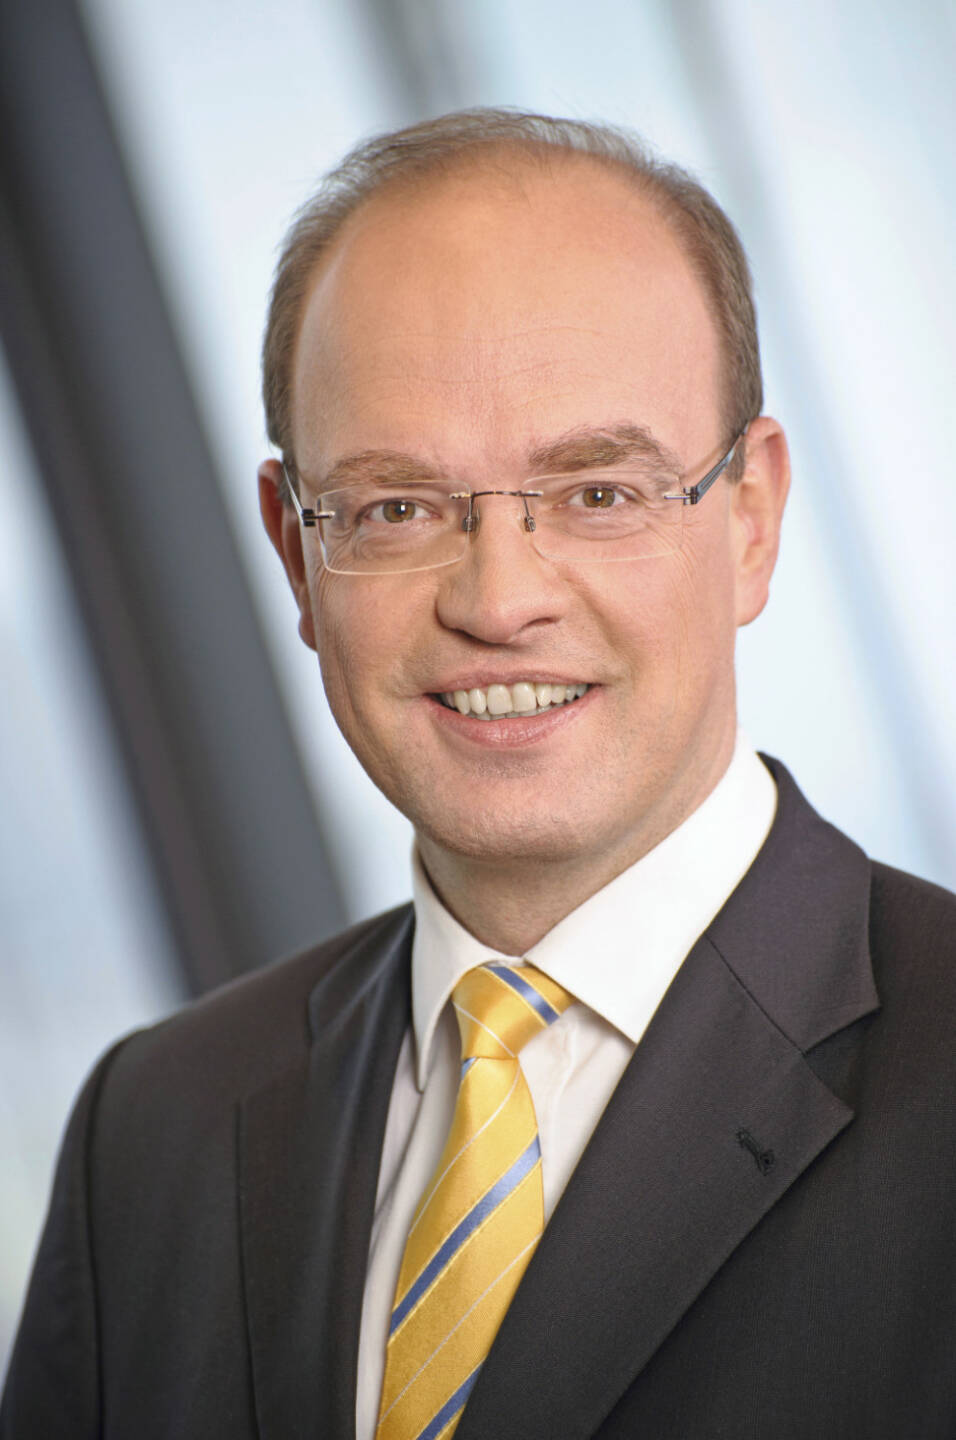 Peter Lennkh, RBI-Vorstand (10.Juni) - finanzmarktfoto.at wünscht alles Gute! (c) Kammeter